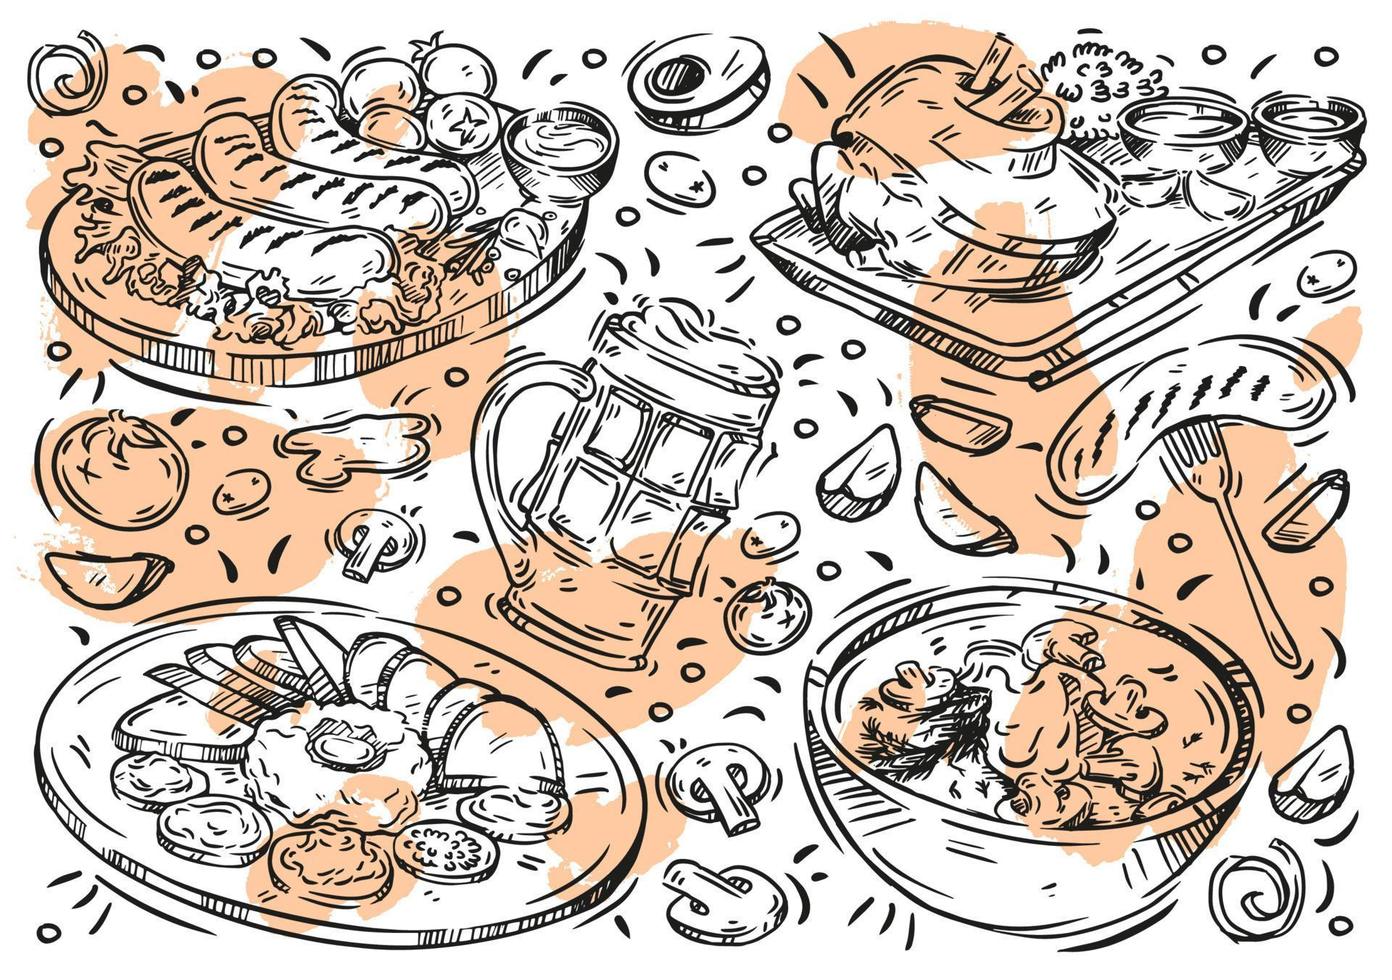 handritad linje vektorillustration på vit bakgrund. doodle tjeckiskt kök, mat, öl, kött, korv, trumpinne, tatarbiff, gräddsoppa med svamp, tomater vektor